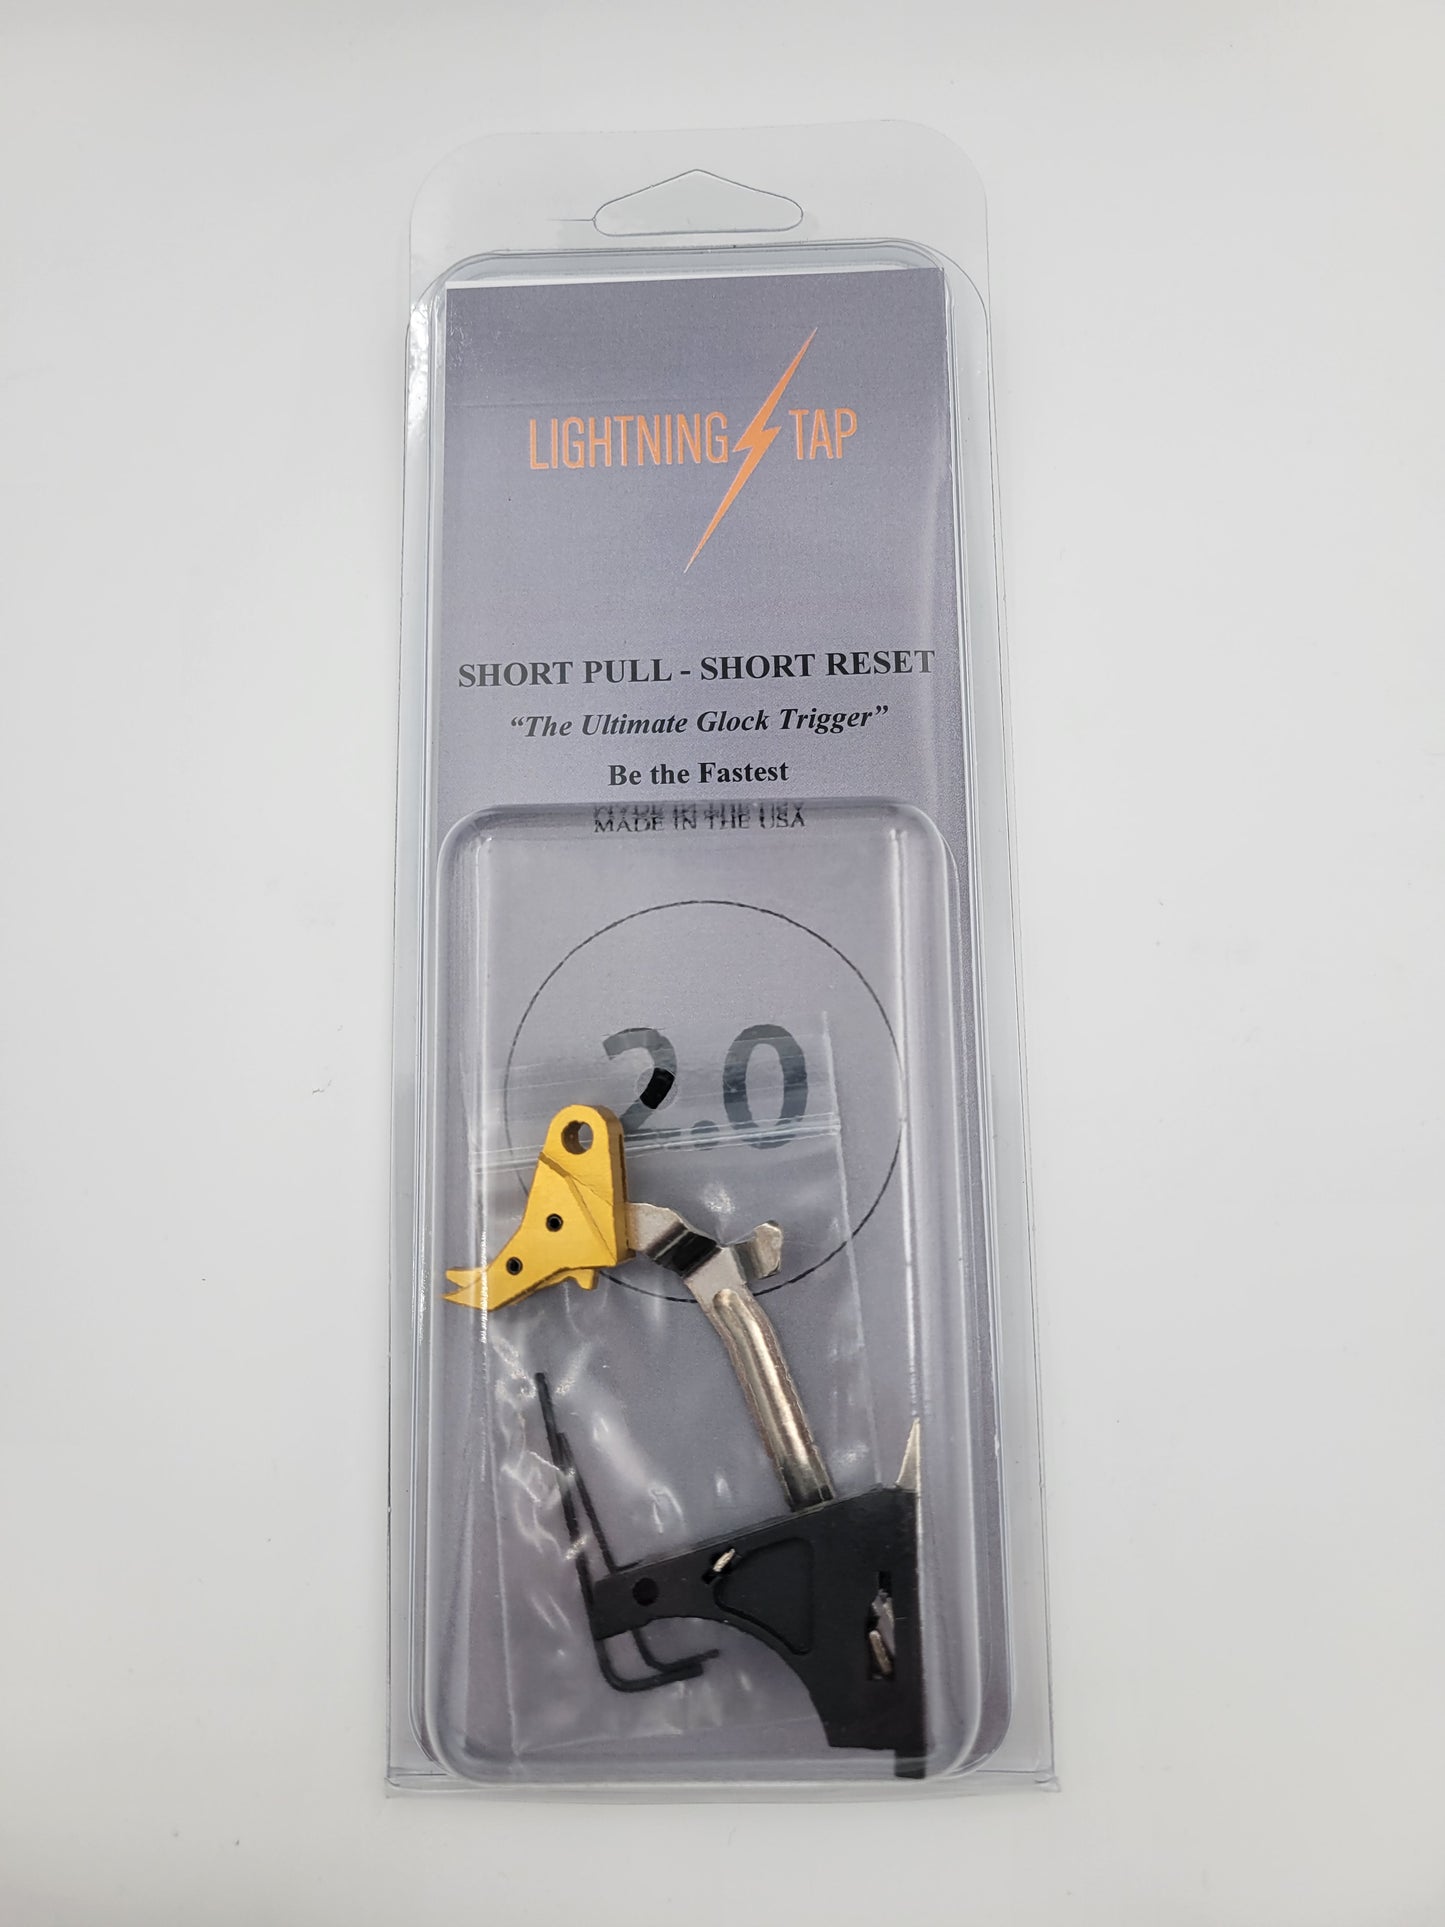 G17/19 Short Pull, Short Reset 2.0 'Lightning Tap' Trigger - Billet Trigger with Bar